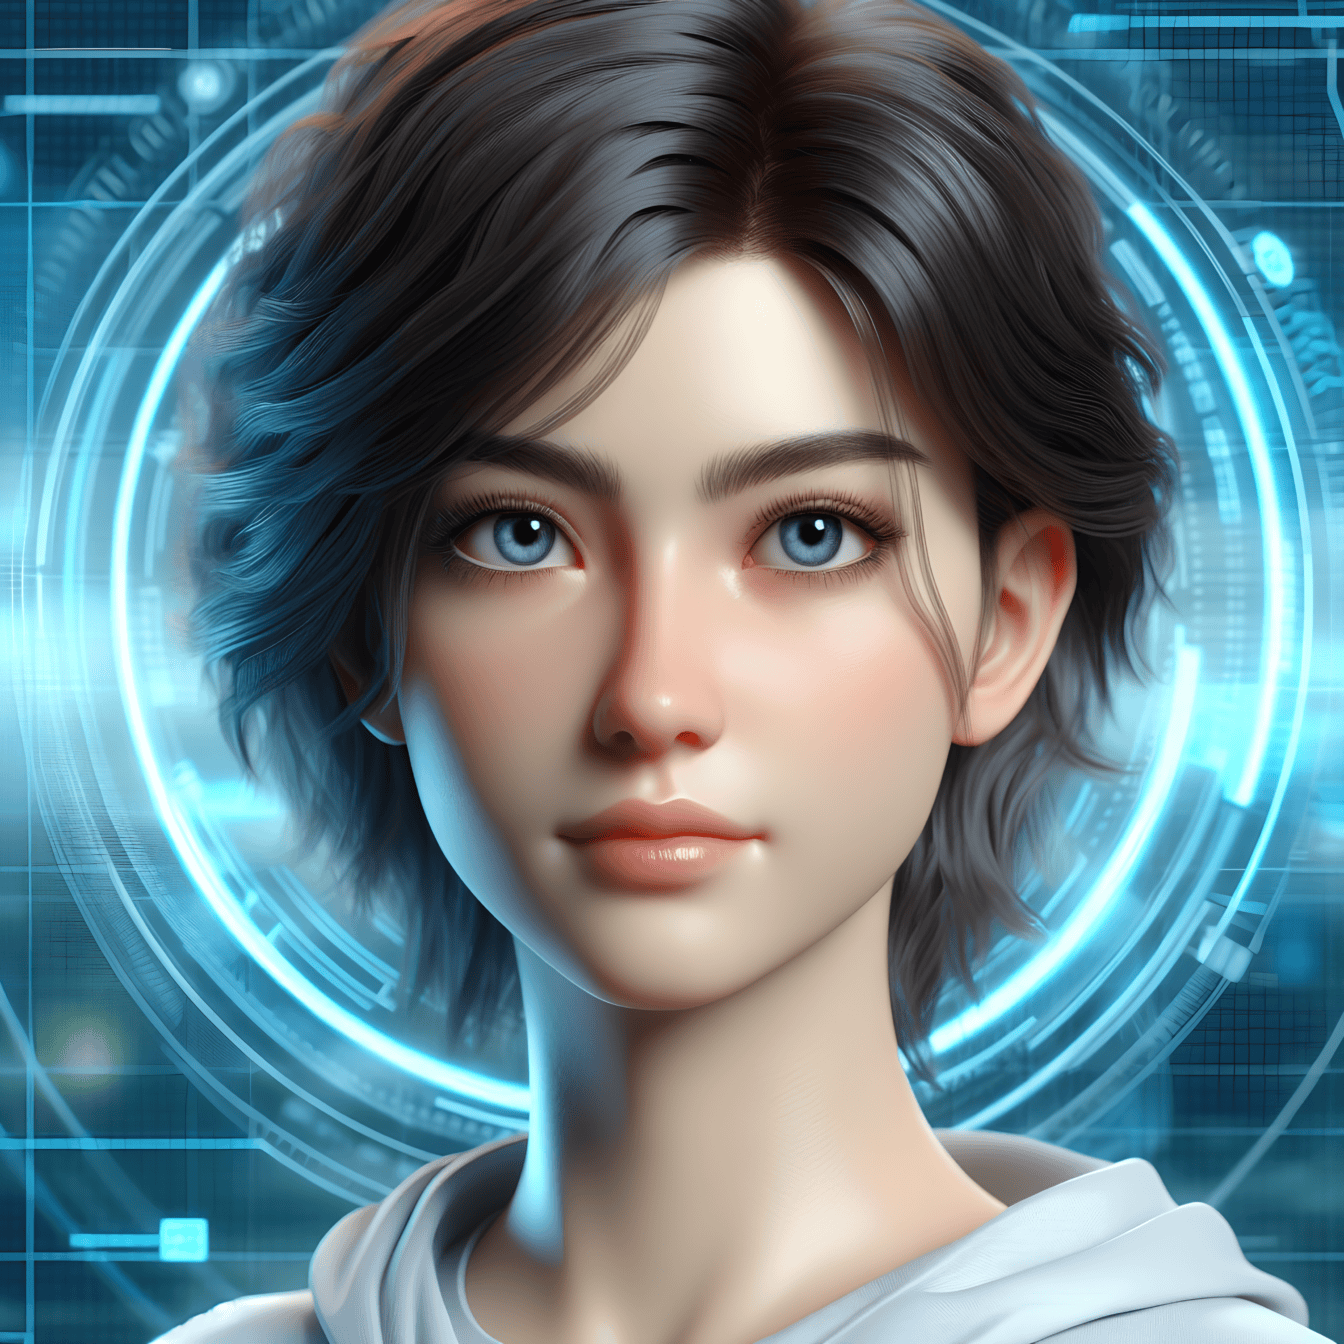 Digitální portrét mladé ženy s krátkými vlasy a modrýma očima ve virtuální realitě